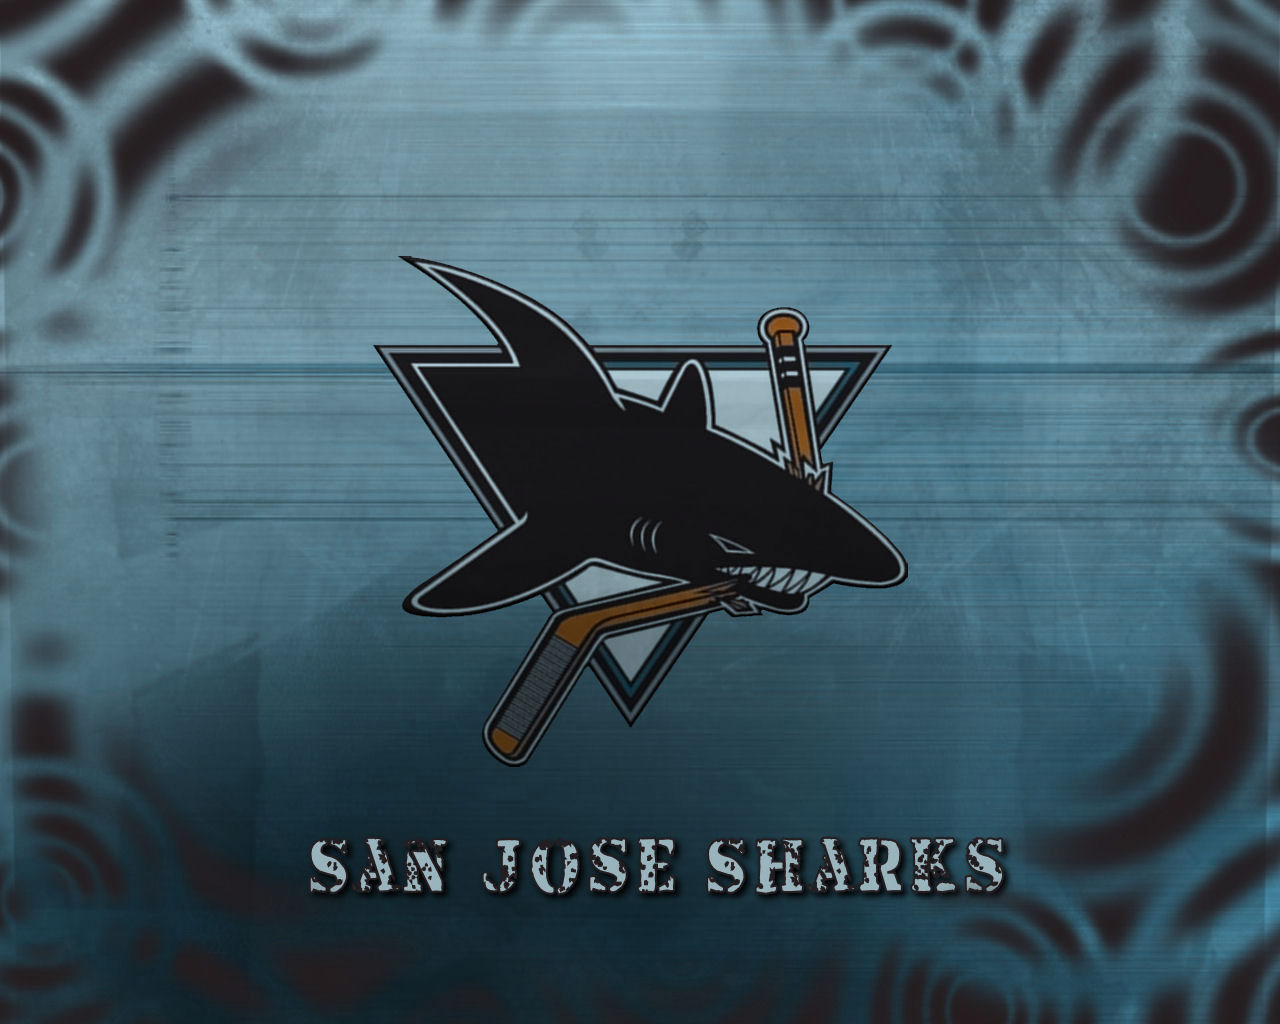  san jose sharks wallpapers san jose sharks backgrounds san jose